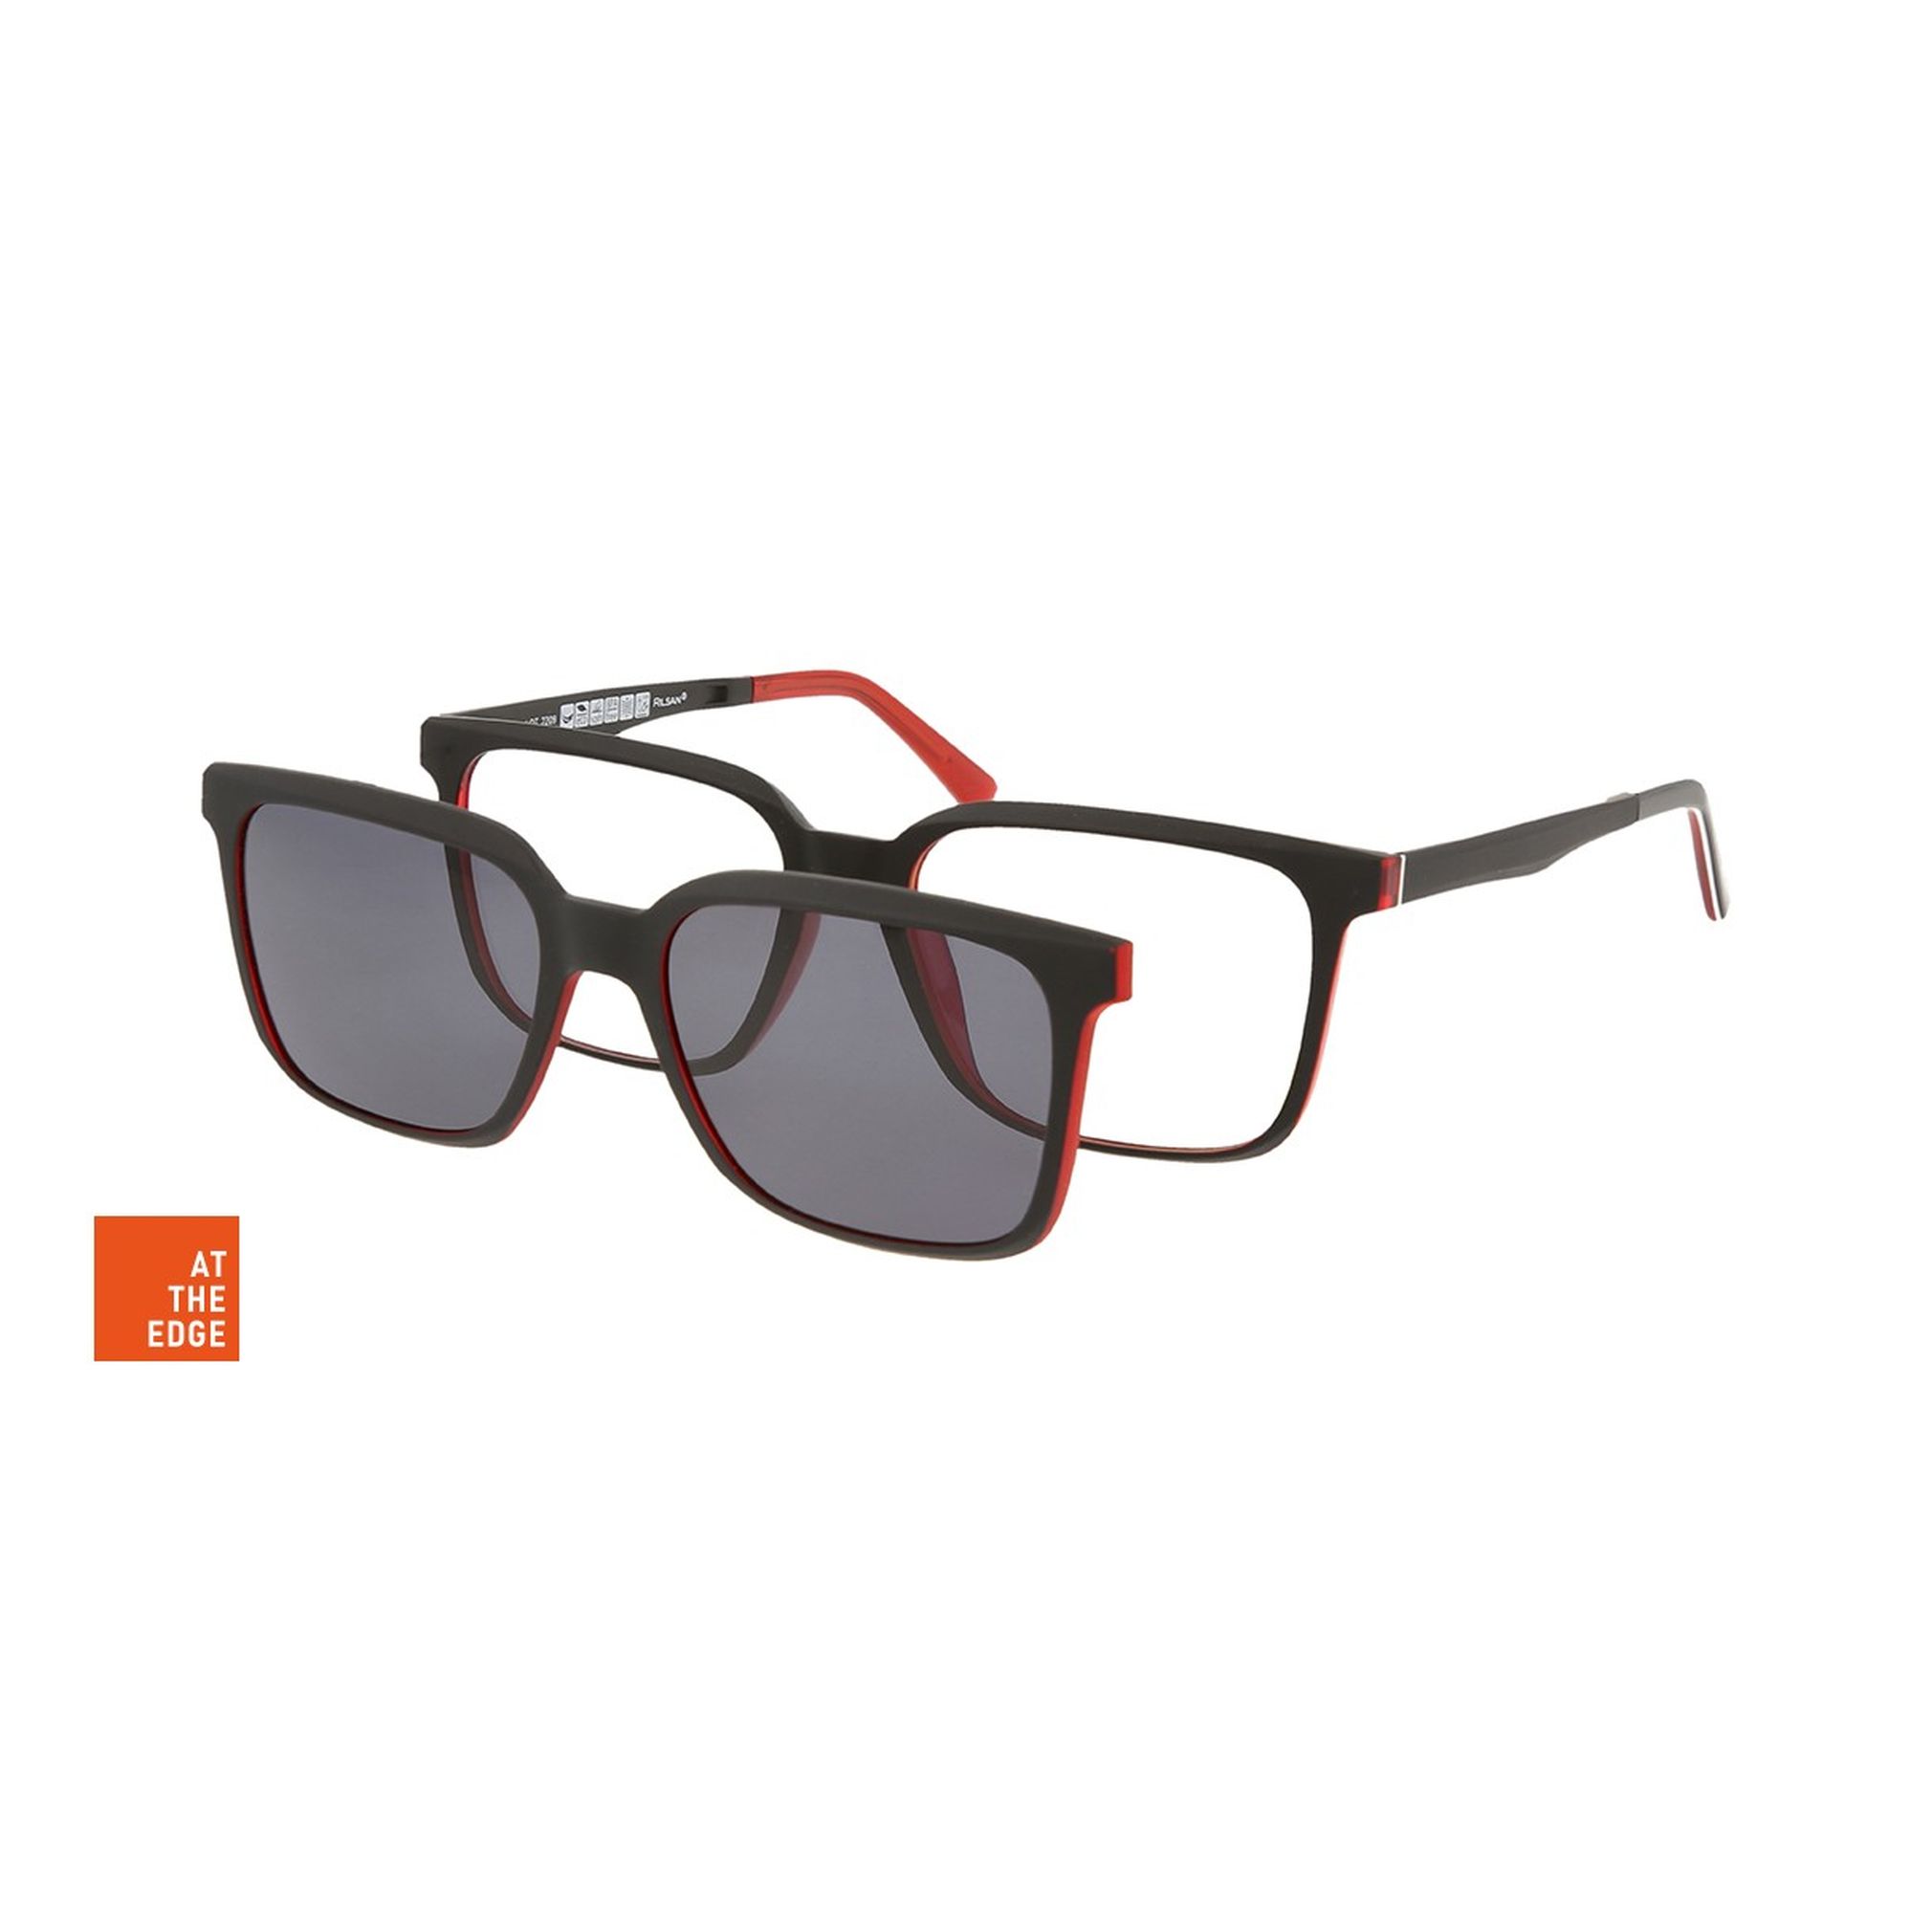 Herrenbrille Solano CL90172 günstig kaufen | Optik Wolf Online-Shop